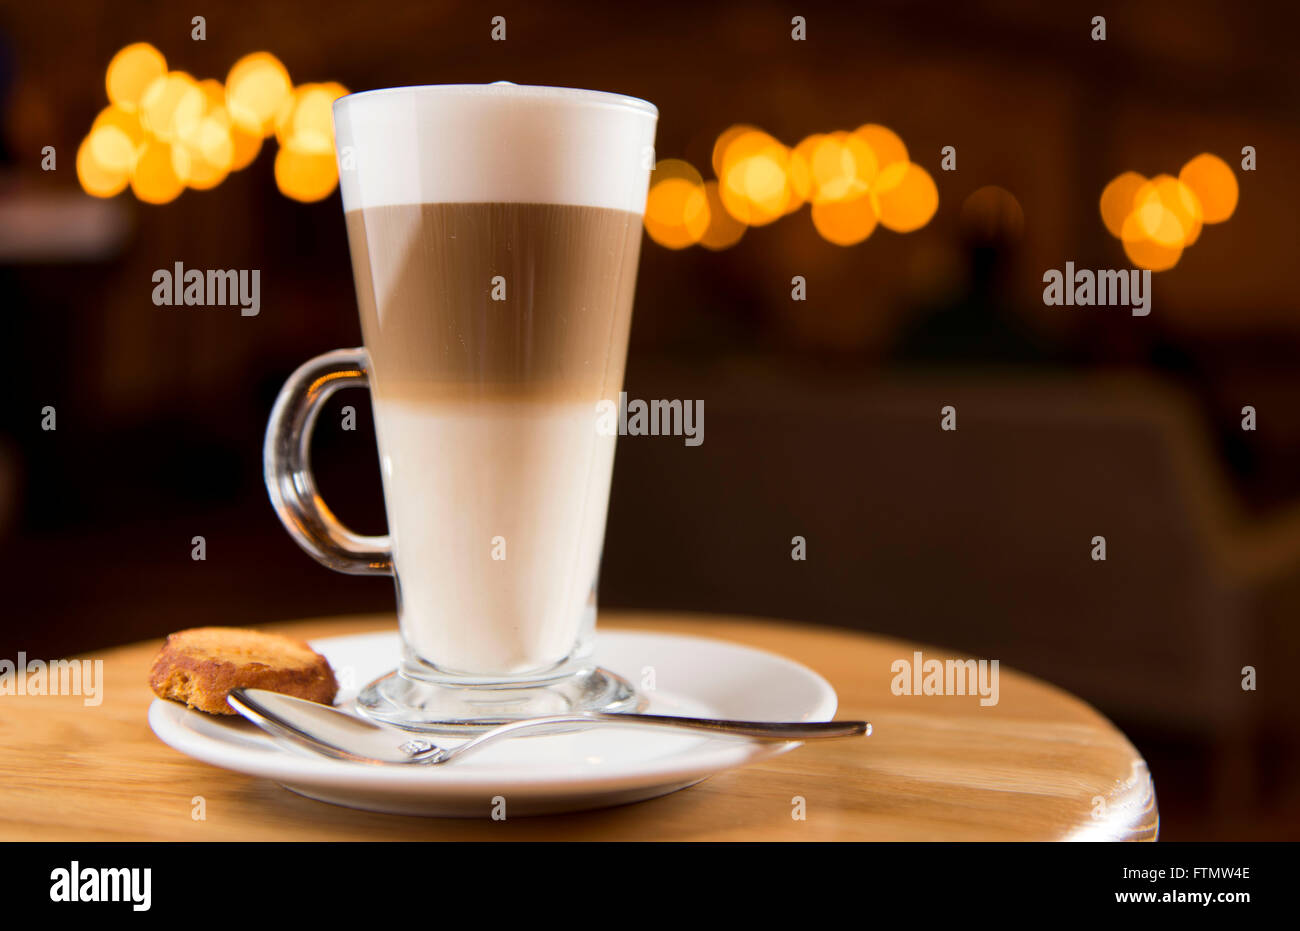 Caffe macchiato café en un vaso largo servido en una cafetería en un platillo con una galleta. Foto de stock